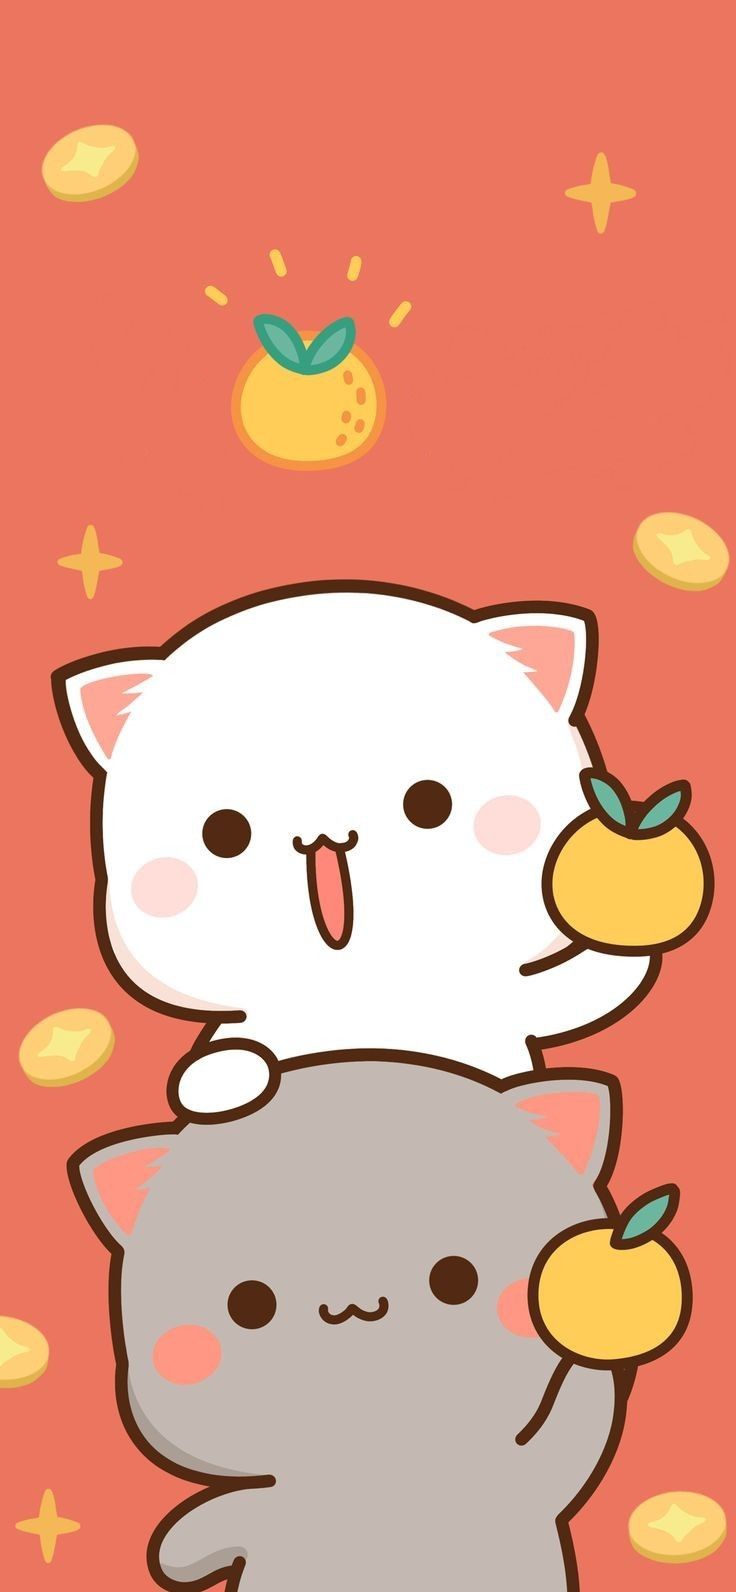 Mochi peach cat ideas. chibi cat, cute anime cat, cute cartoon wallpaper